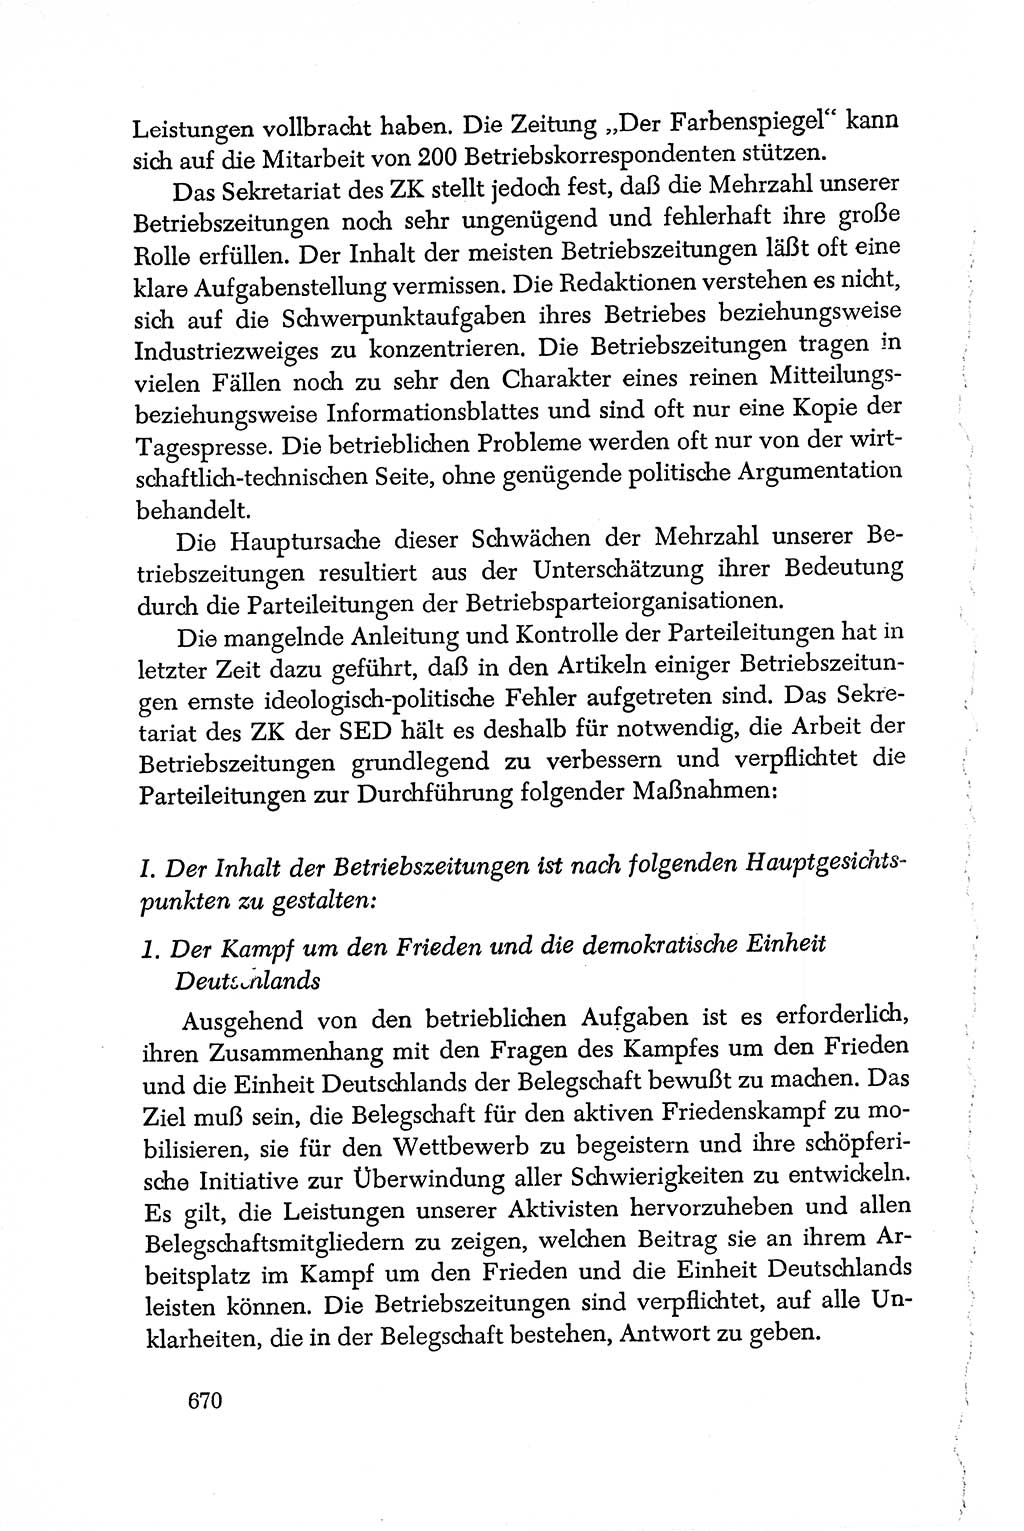 Dokumente der Sozialistischen Einheitspartei Deutschlands (SED) [Deutsche Demokratische Republik (DDR)] 1950-1952, Seite 670 (Dok. SED DDR 1950-1952, S. 670)